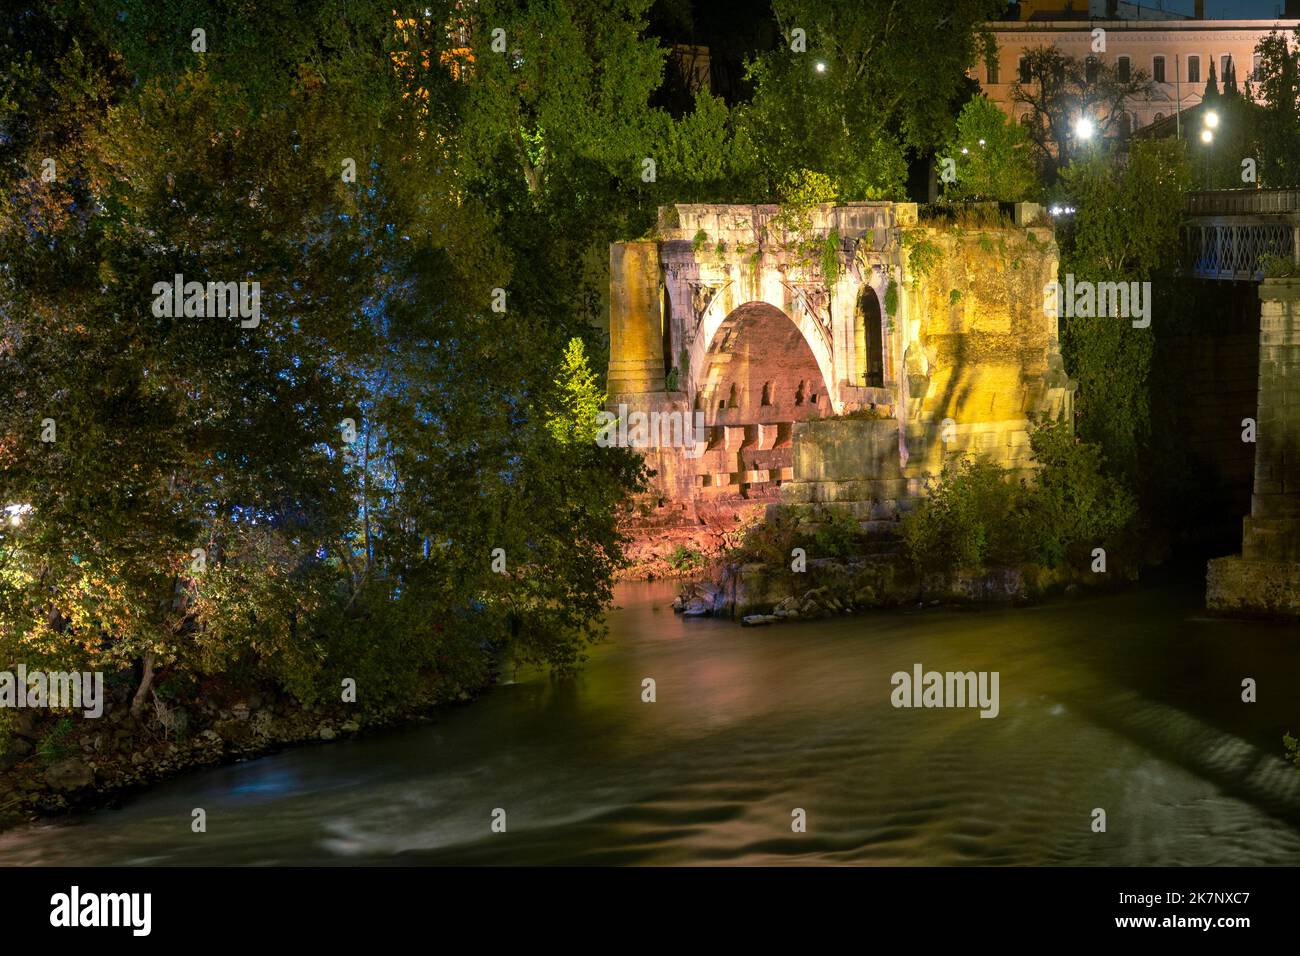 Pons Aemilius bei Nacht, Rom Italien Stockfoto